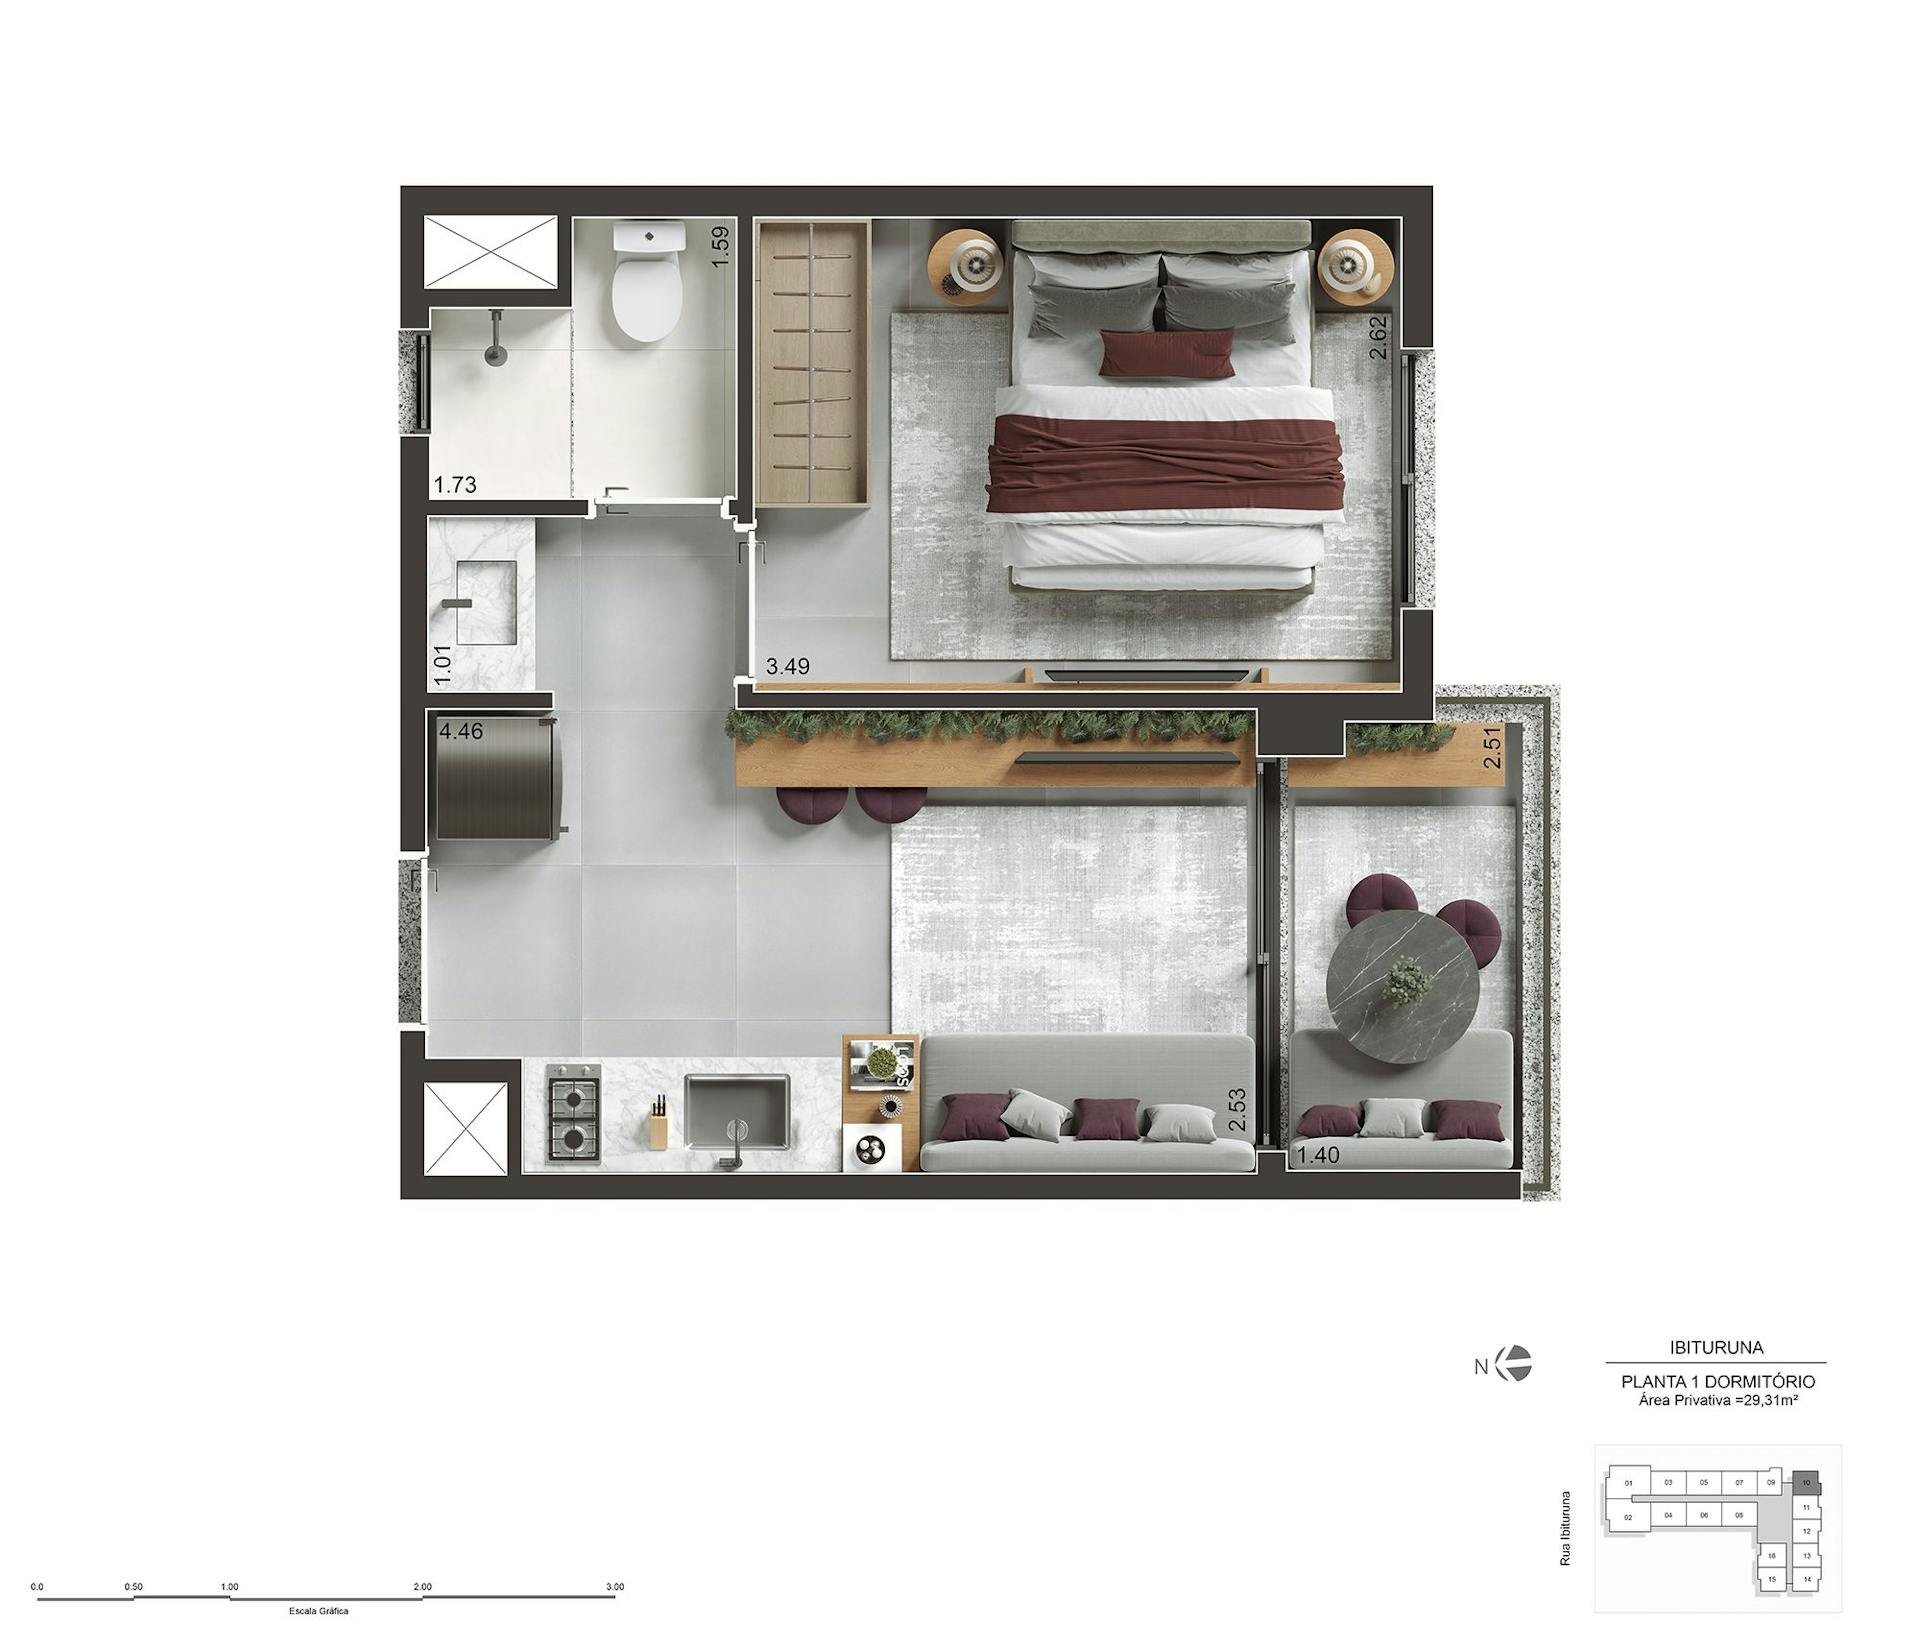 Perspectiva artística do apartamento de 29m² com 1 dorm - Final 10